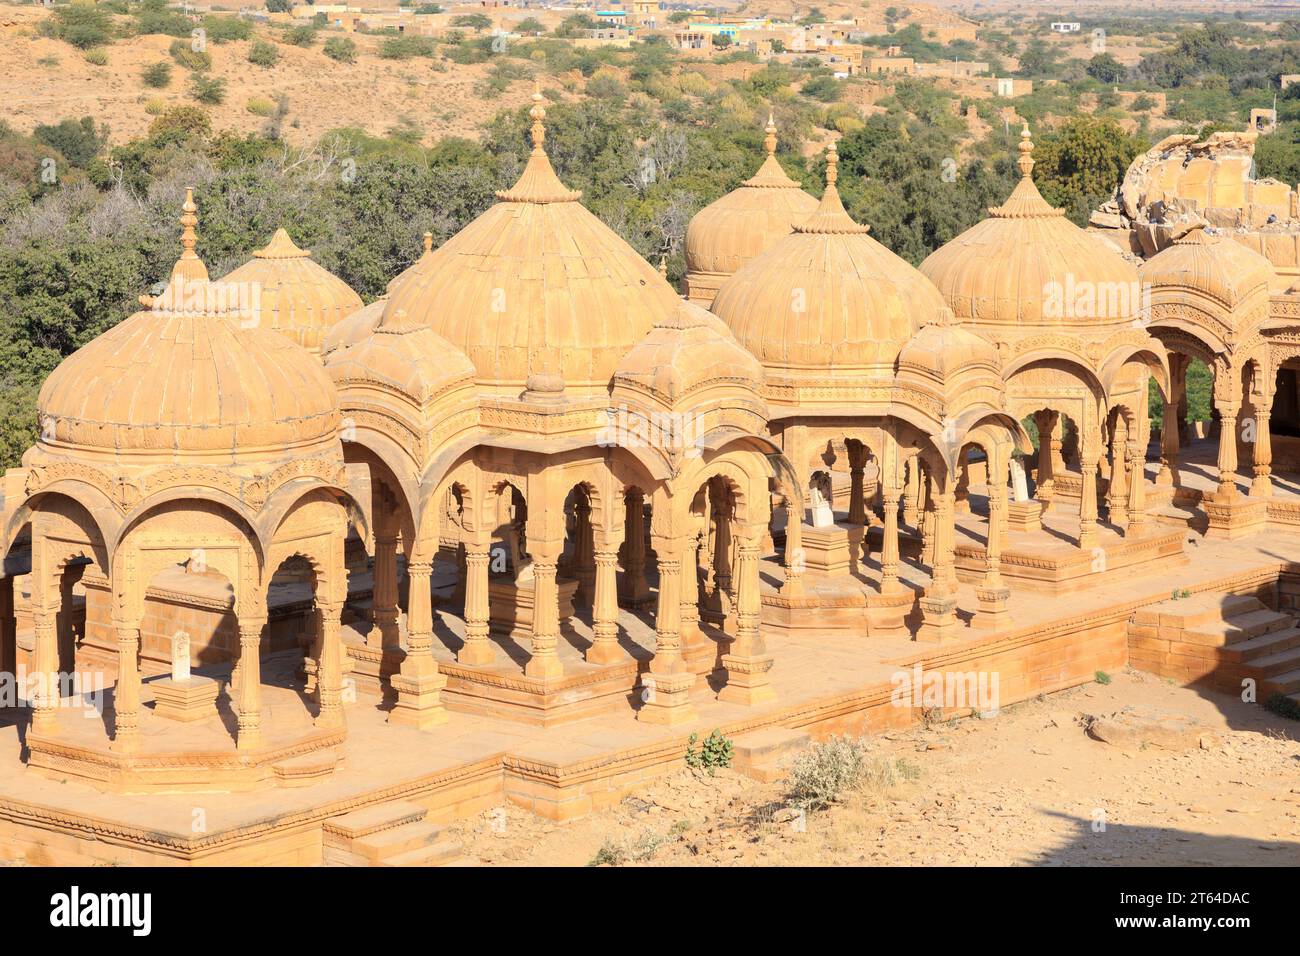 Bada Bagh Cenotaphs, Königliche Chatris, Jaisalmer, Rajasthan, Indien Stock Photo